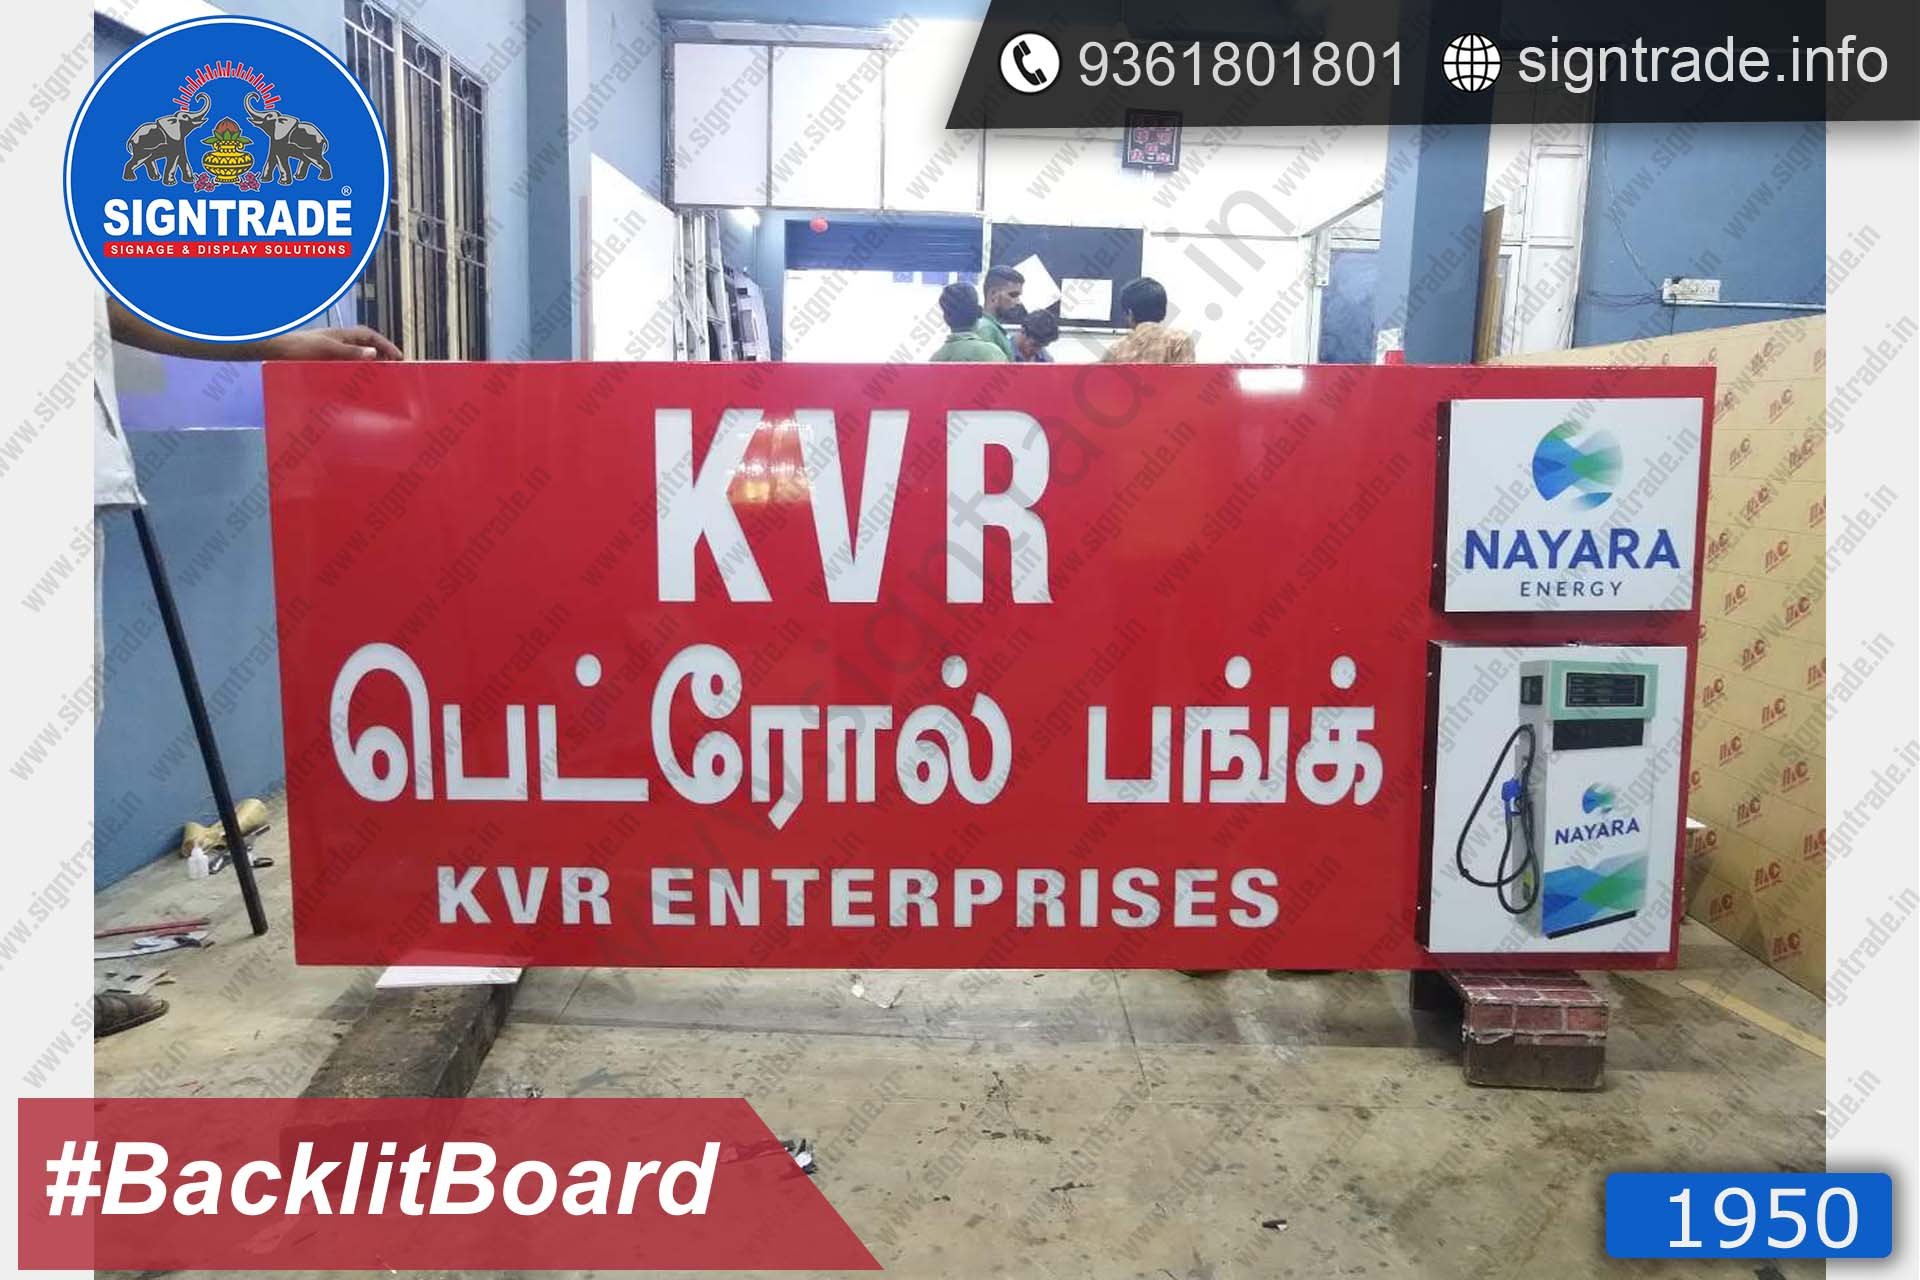 KVR Enterprises Backlit Board